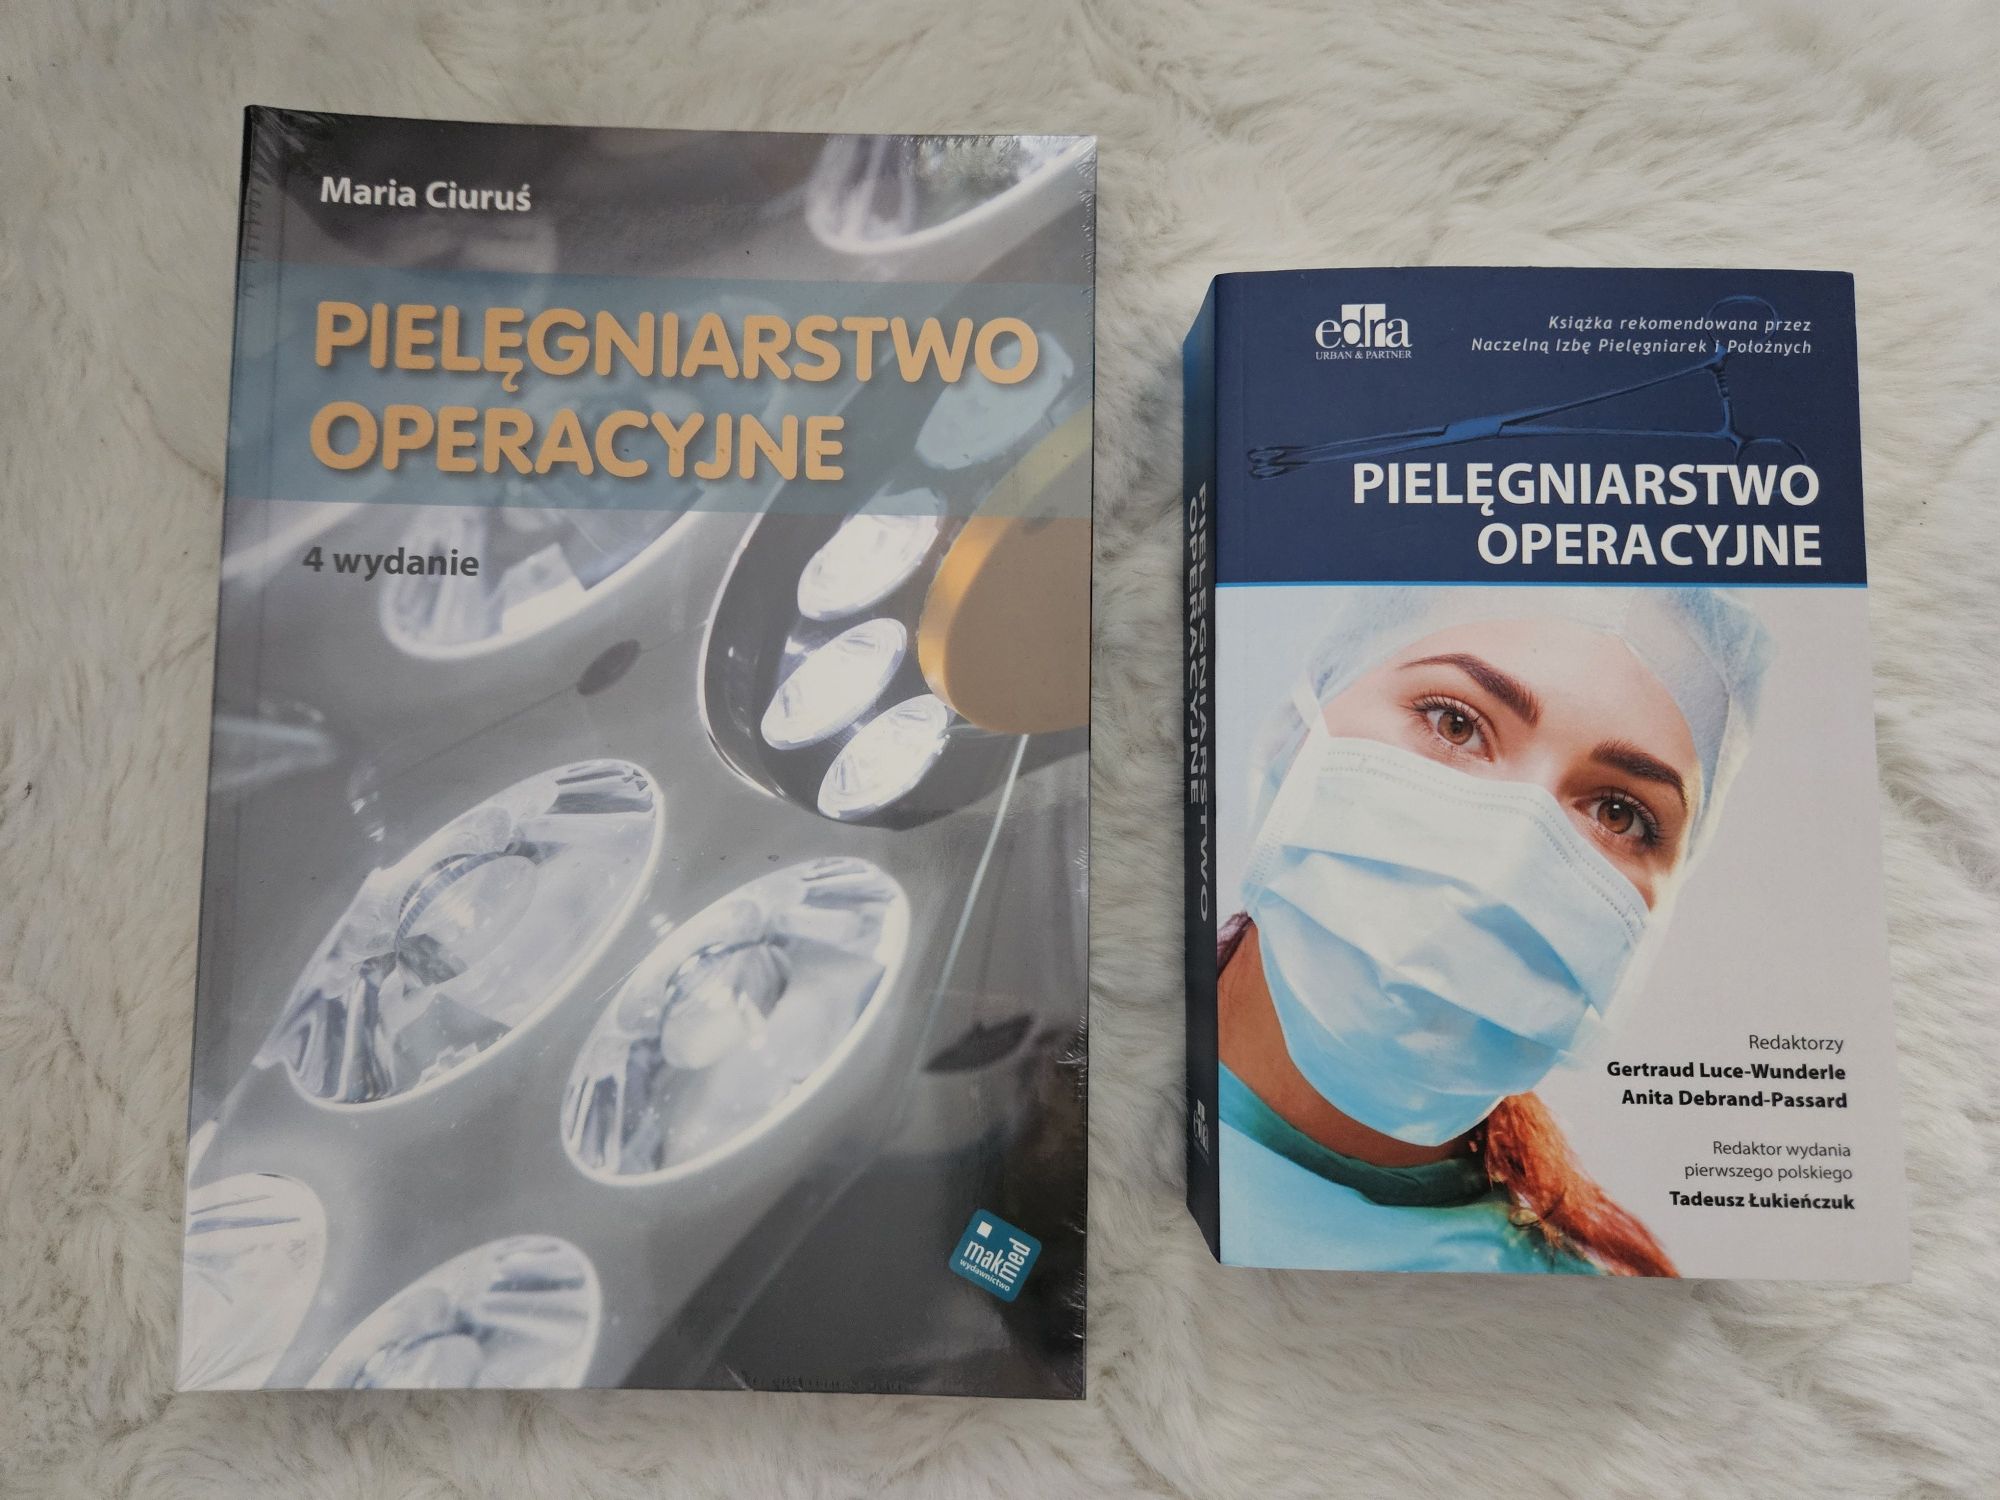 Pielęgniarstwo operacyjne zestaw komplet 2 książkii